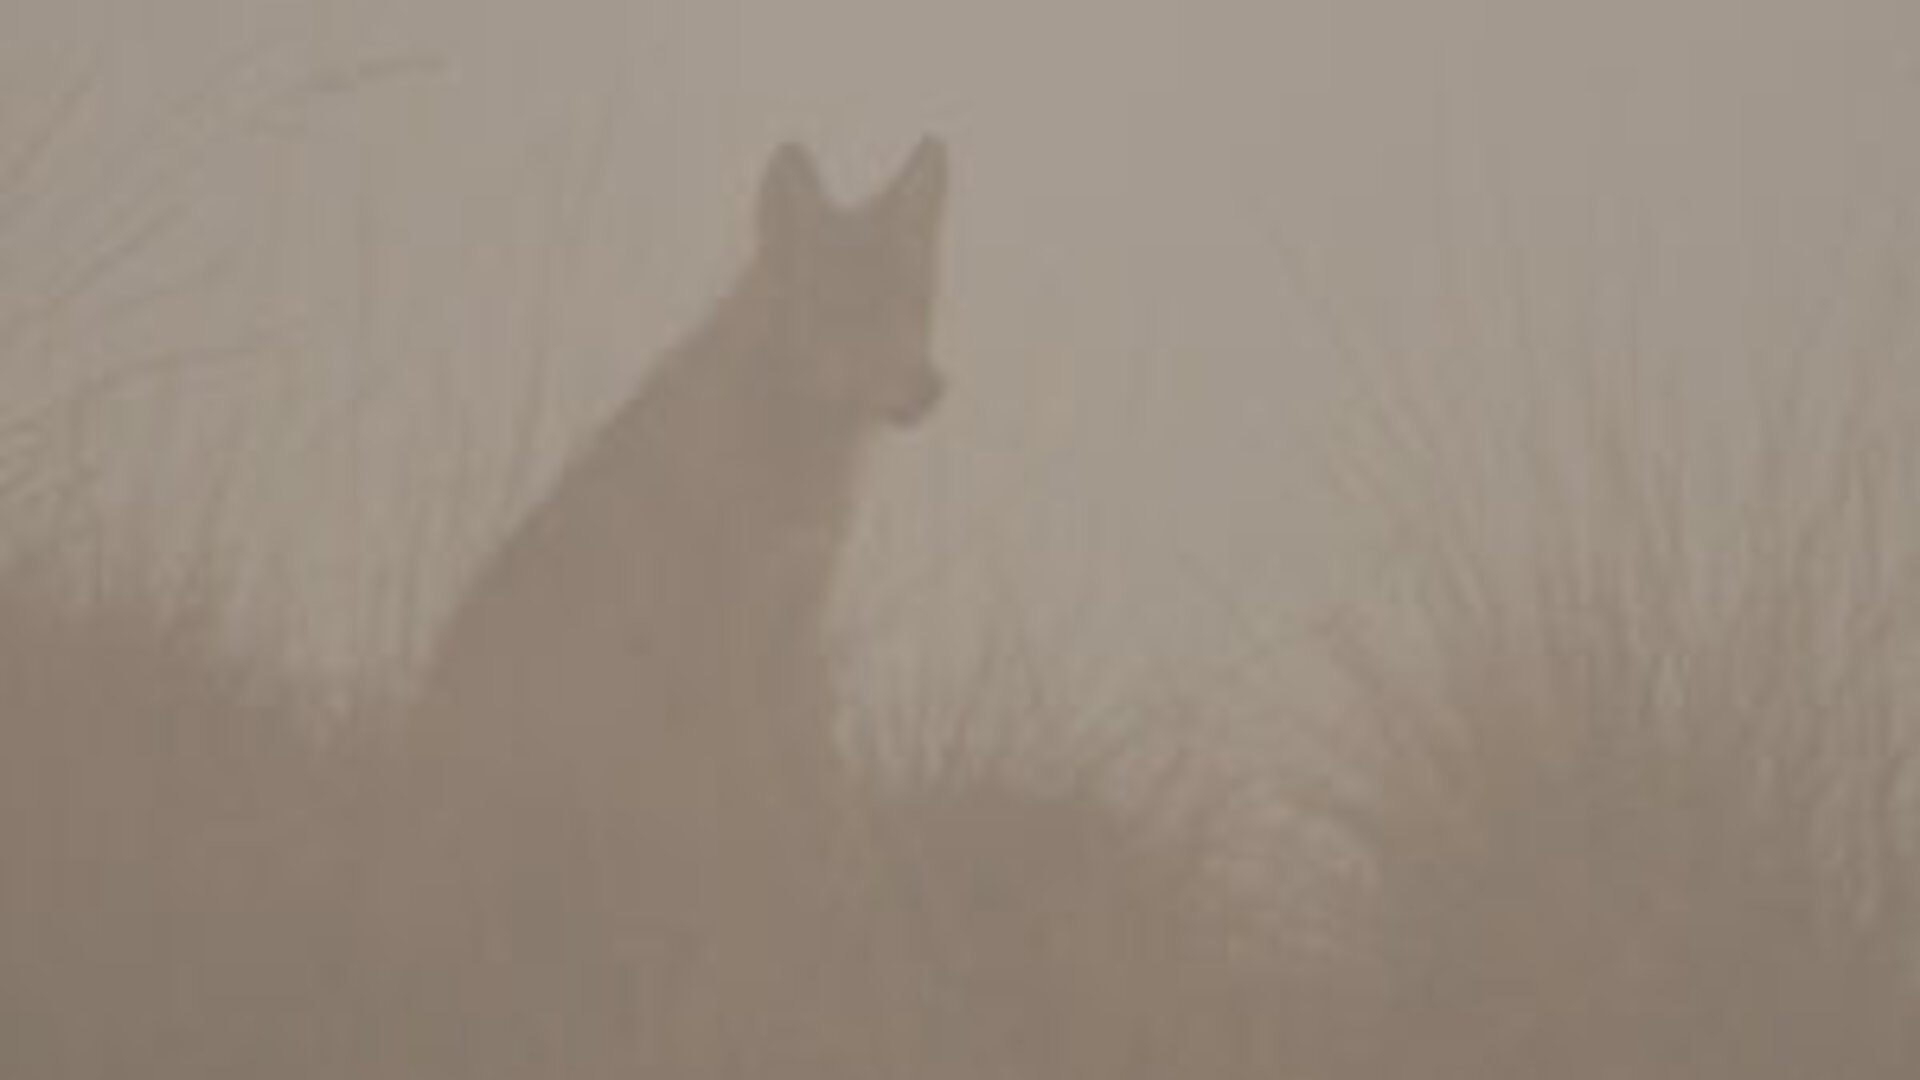 In het spoor van de wolf, foto: Ernesto Zvar, ANB